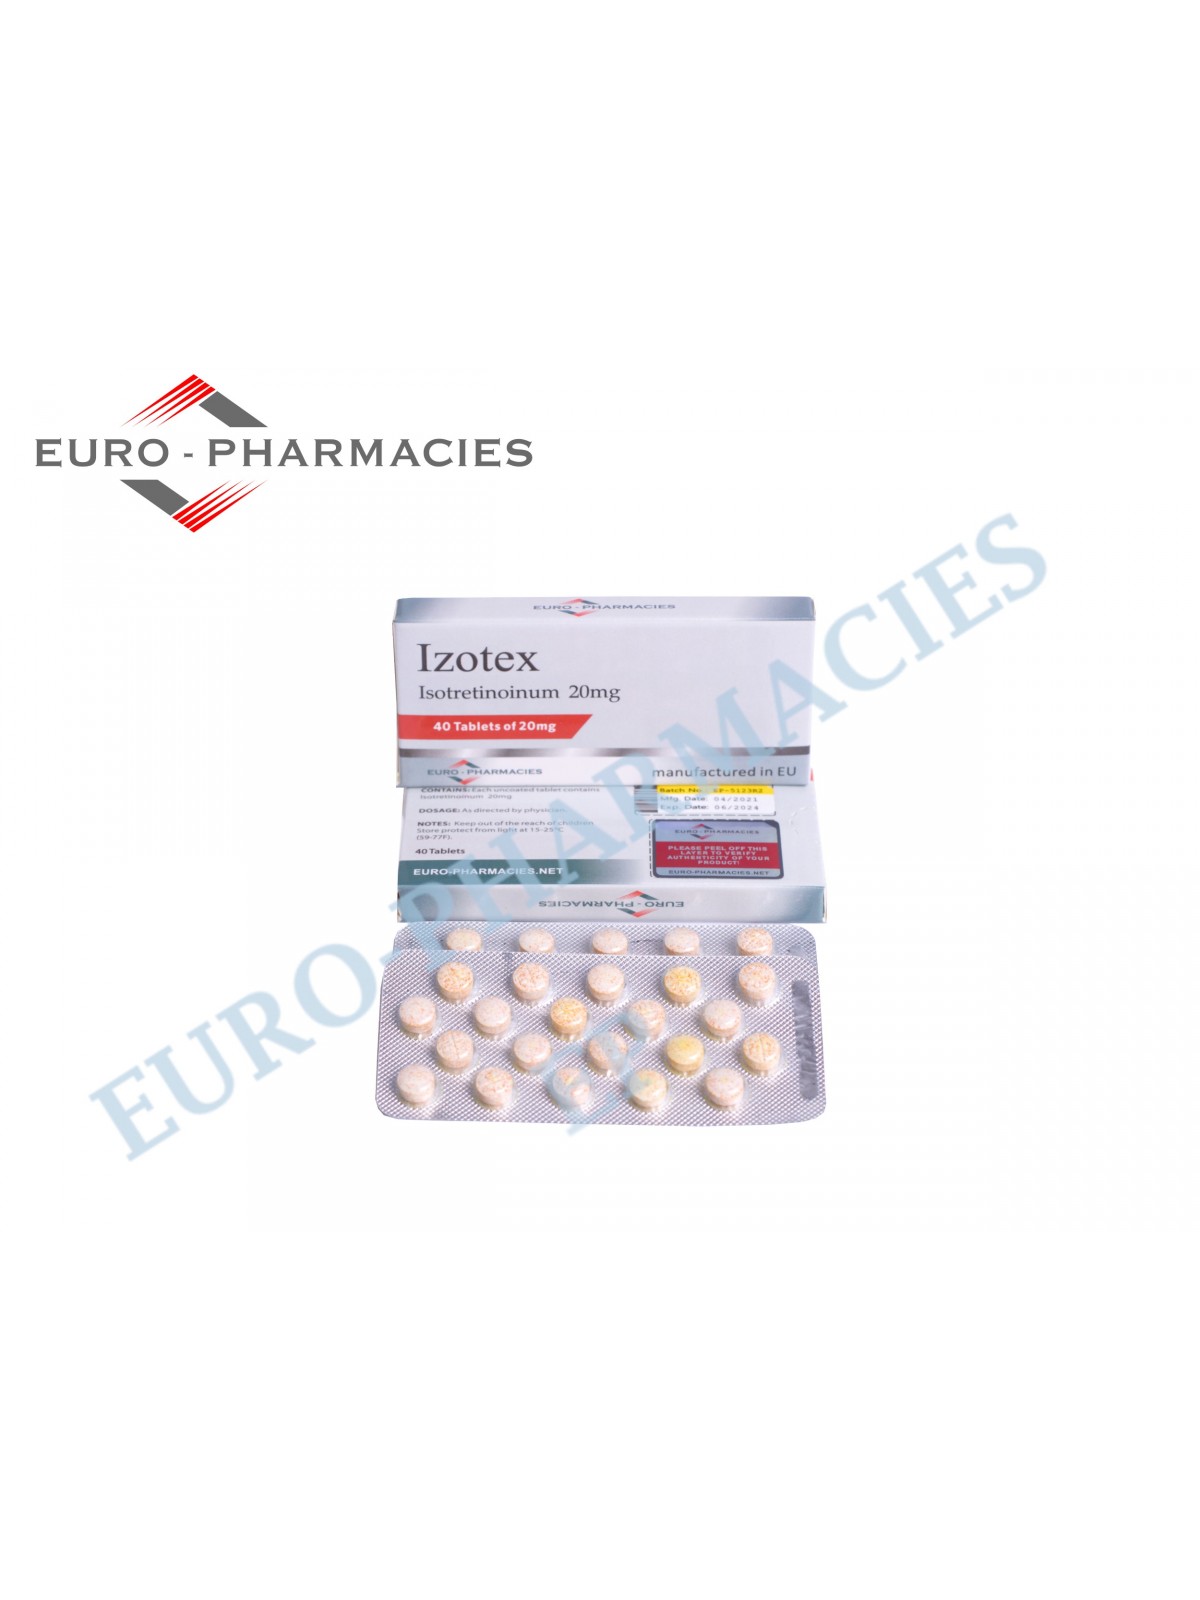 Izotex - 20mg/tab - 40 pills/blister - Euro-Pharmacies